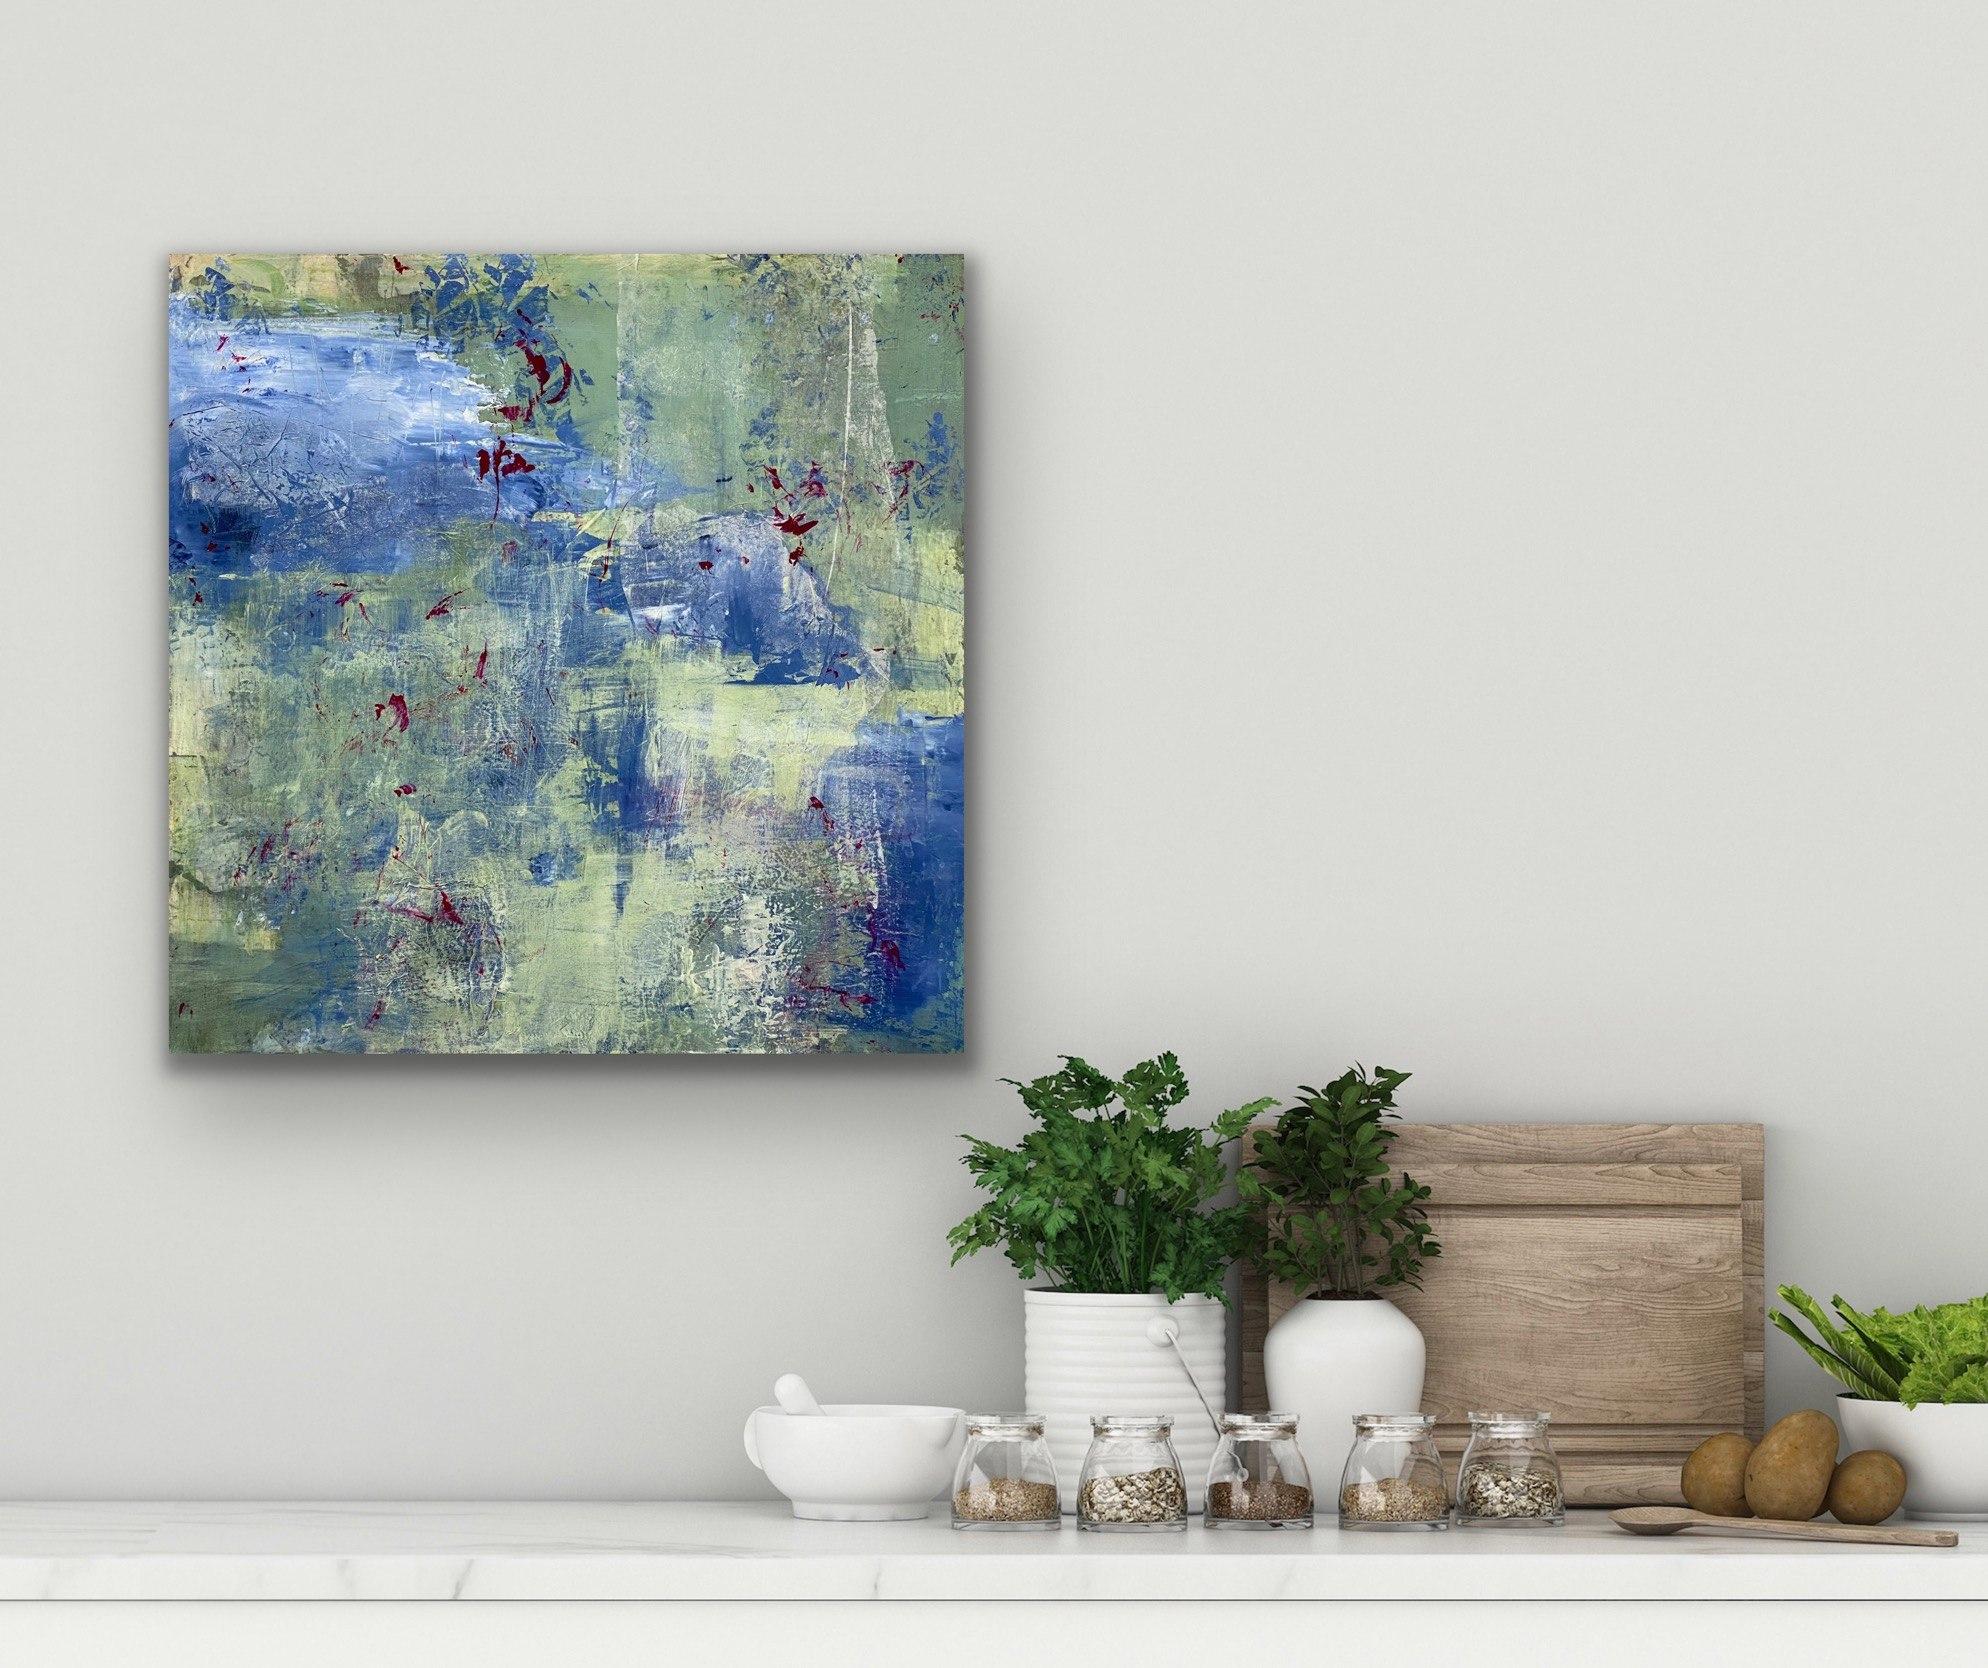 Enter the Woodland, bleu, vert, expressionnisme abstrait inspiré de la nature - Impressionnisme abstrait Painting par Juanita Bellavance 